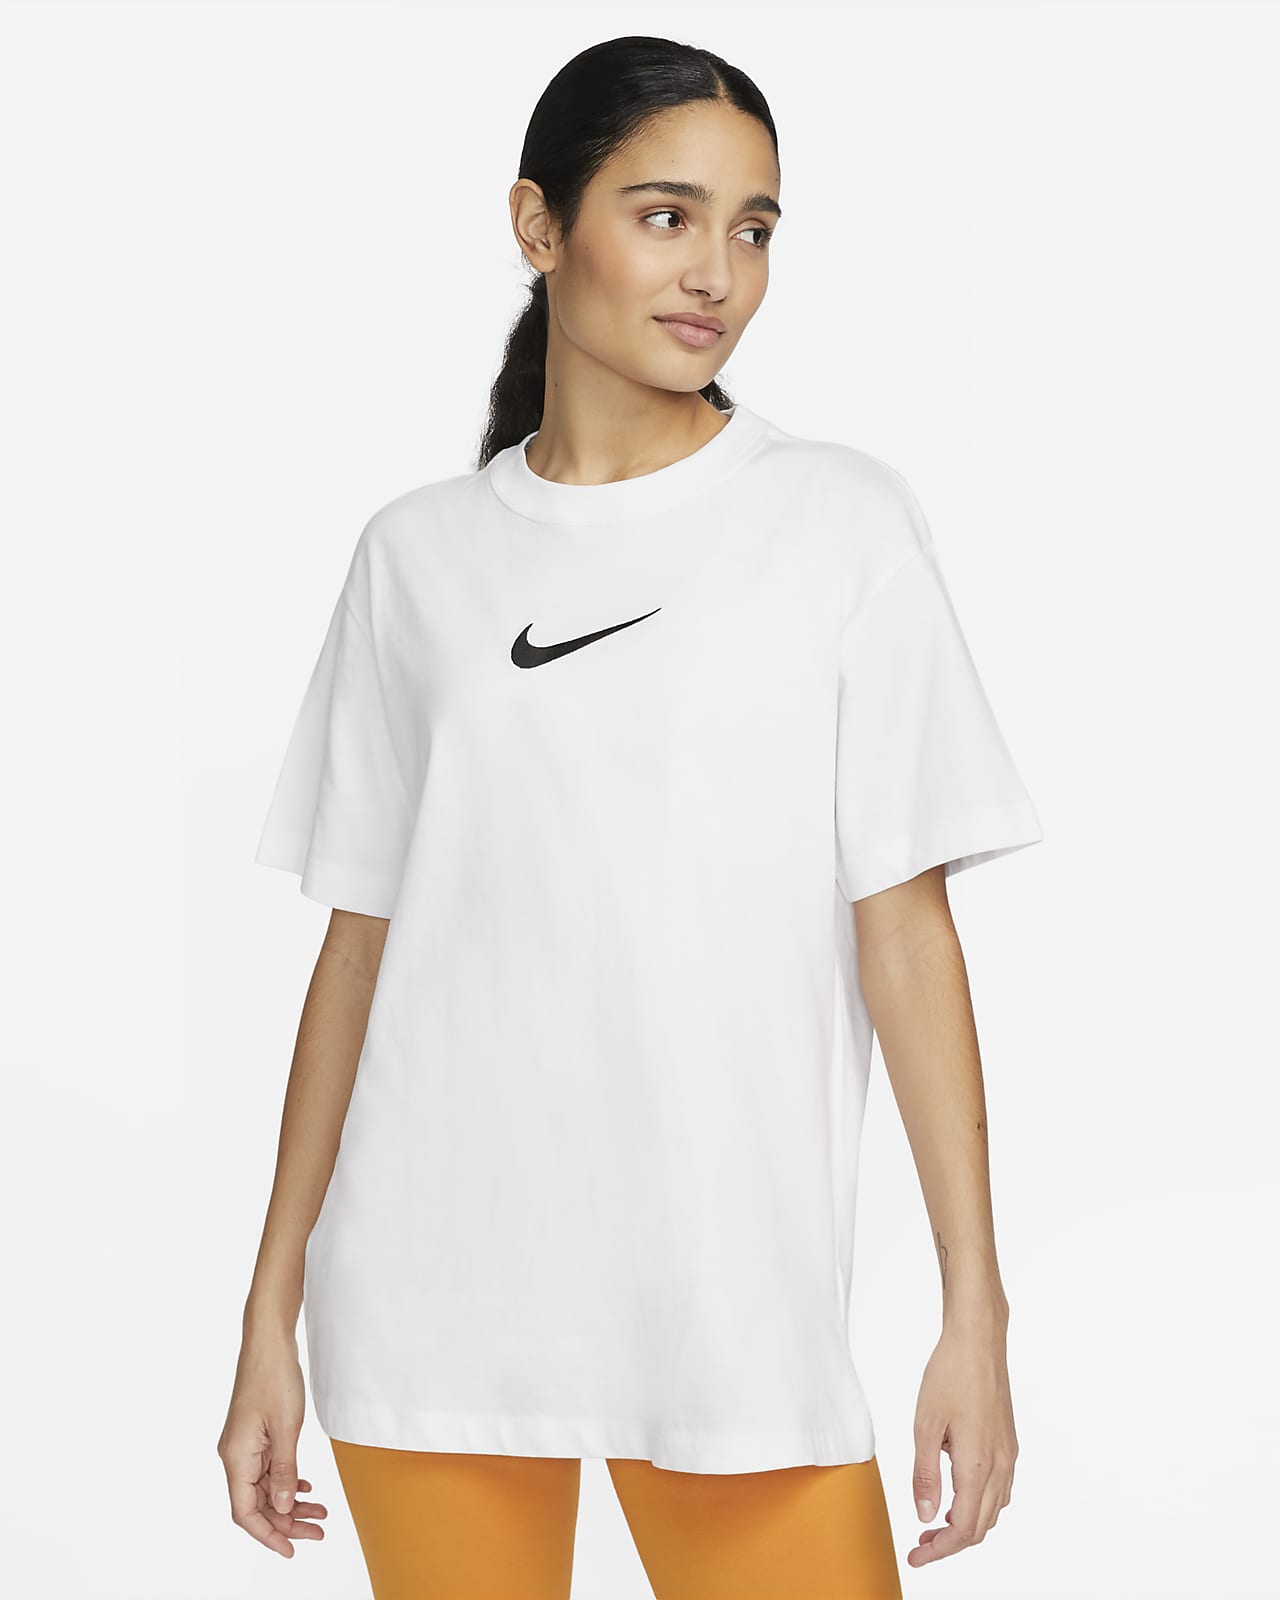 Nike Women's T-Shirt. Nike NO